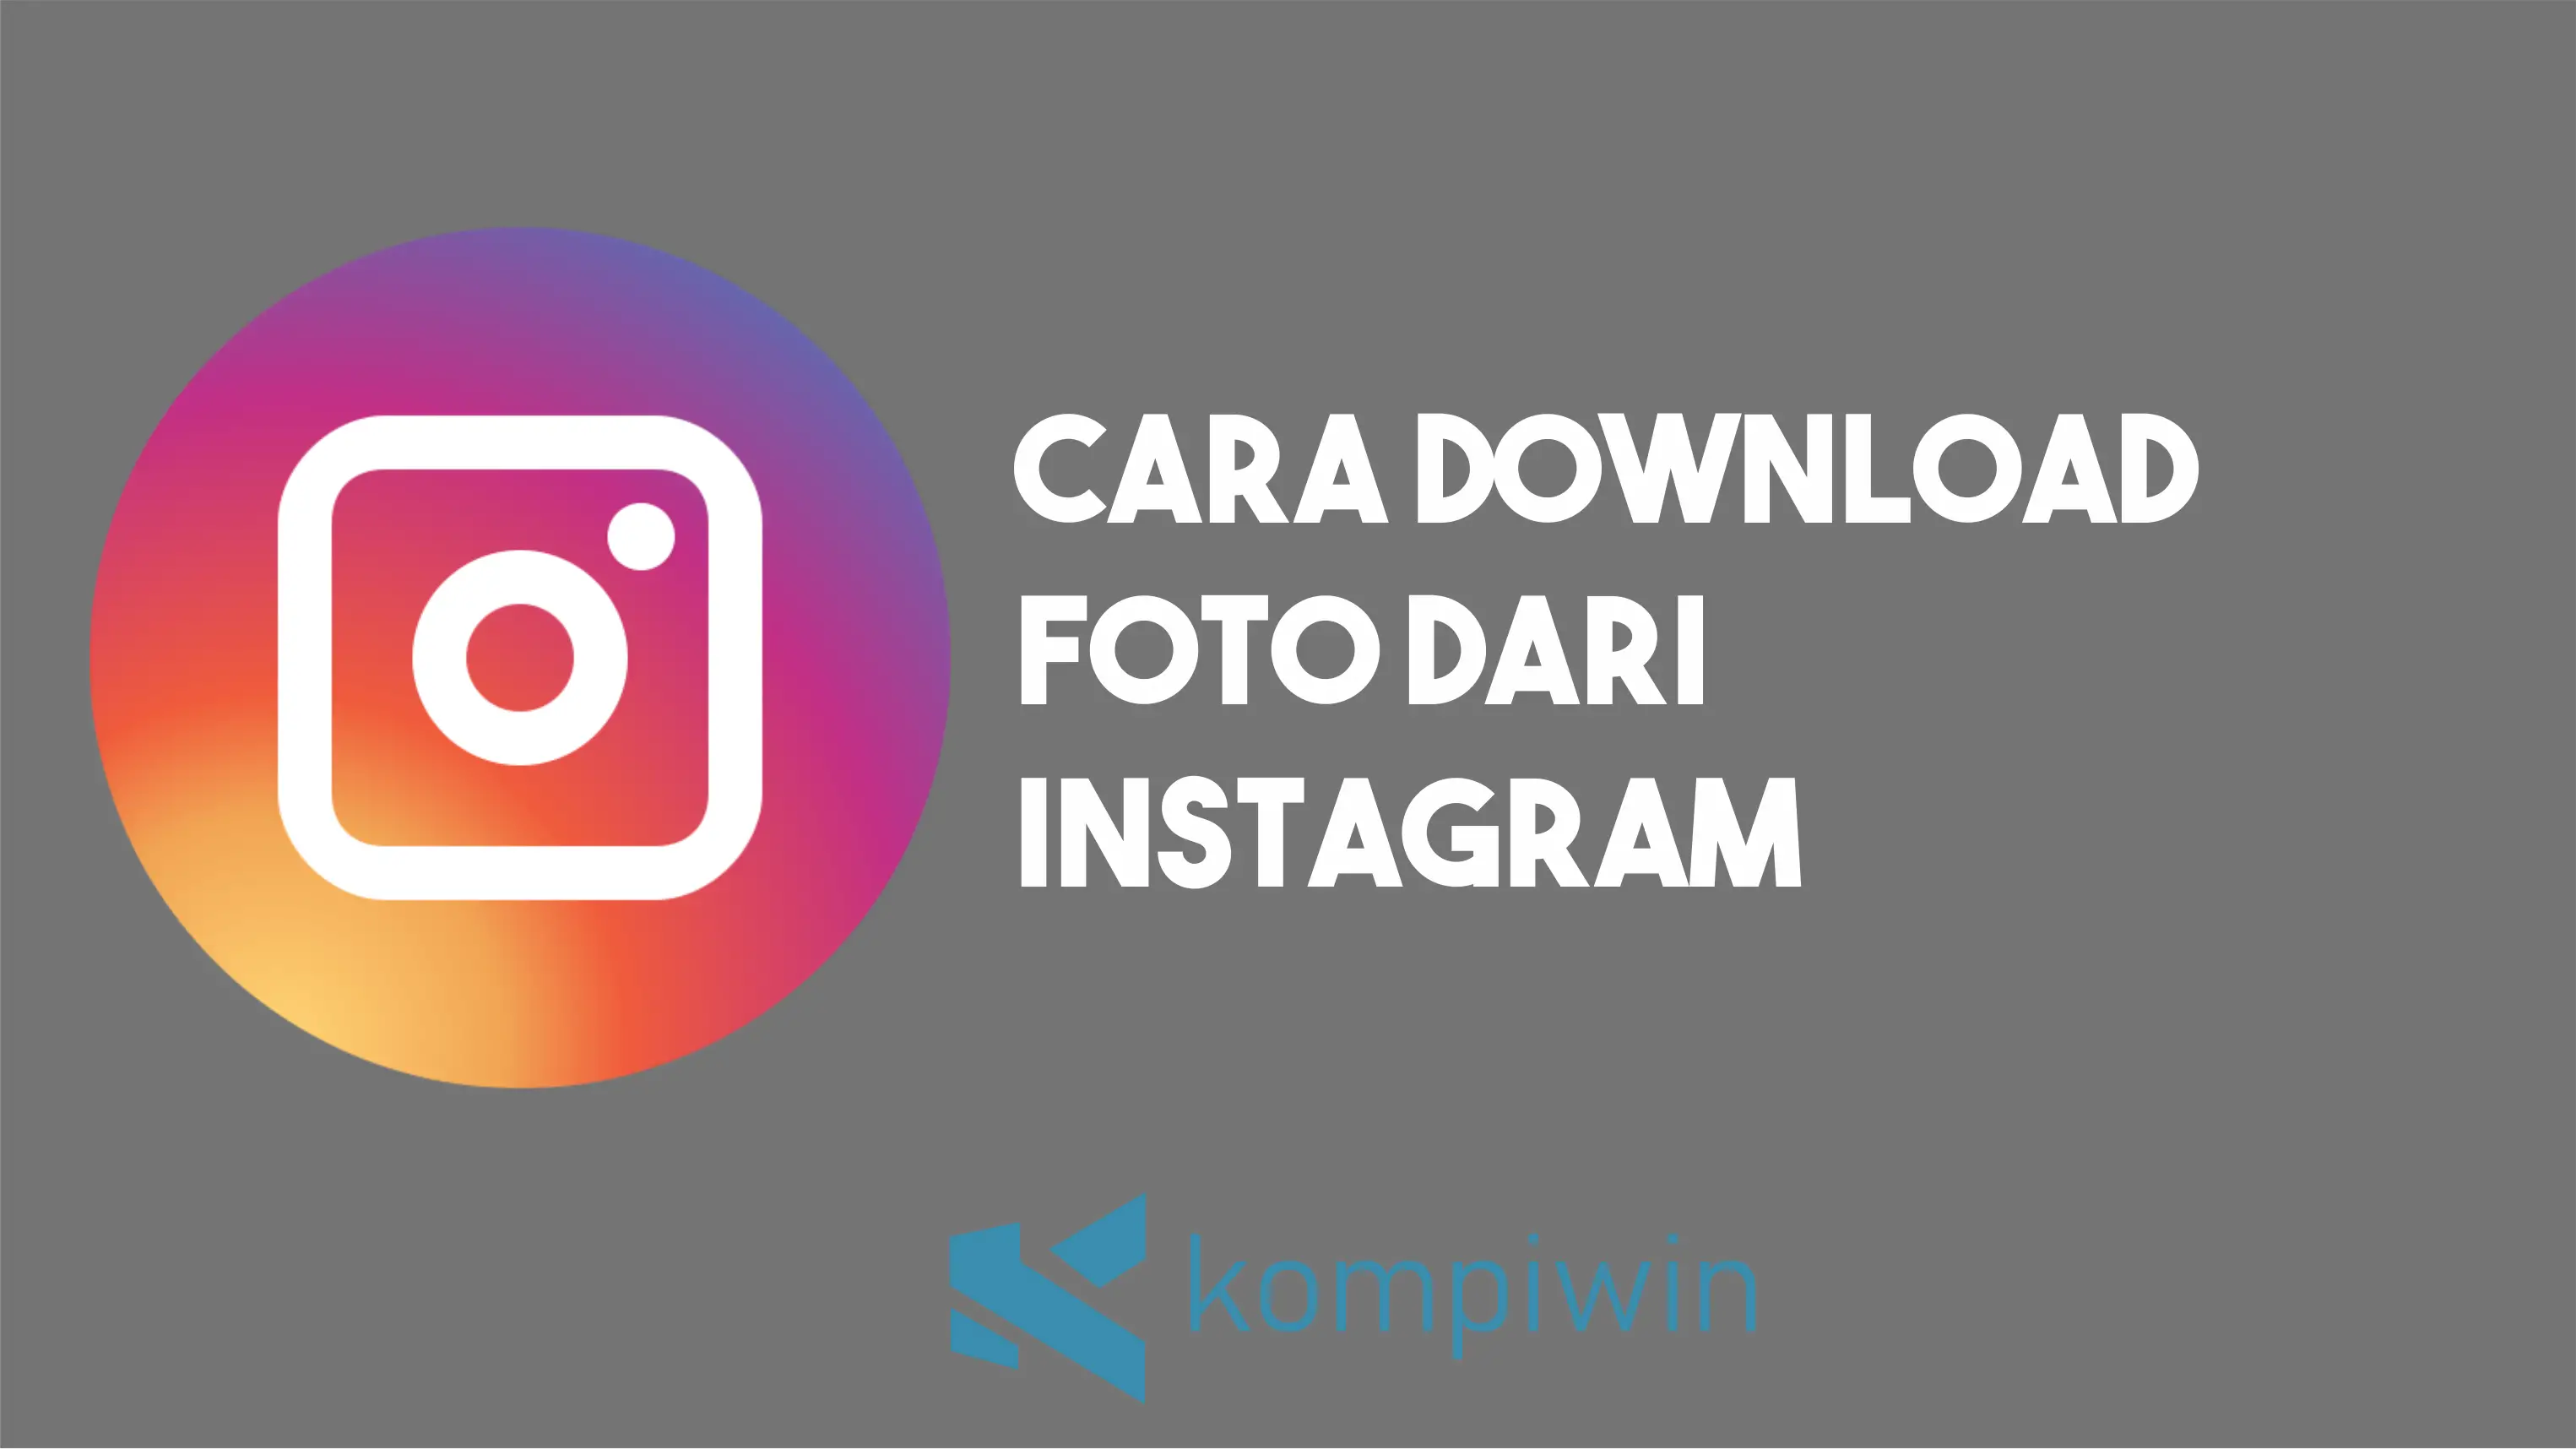 Cara Download Foto dari Instagram 1